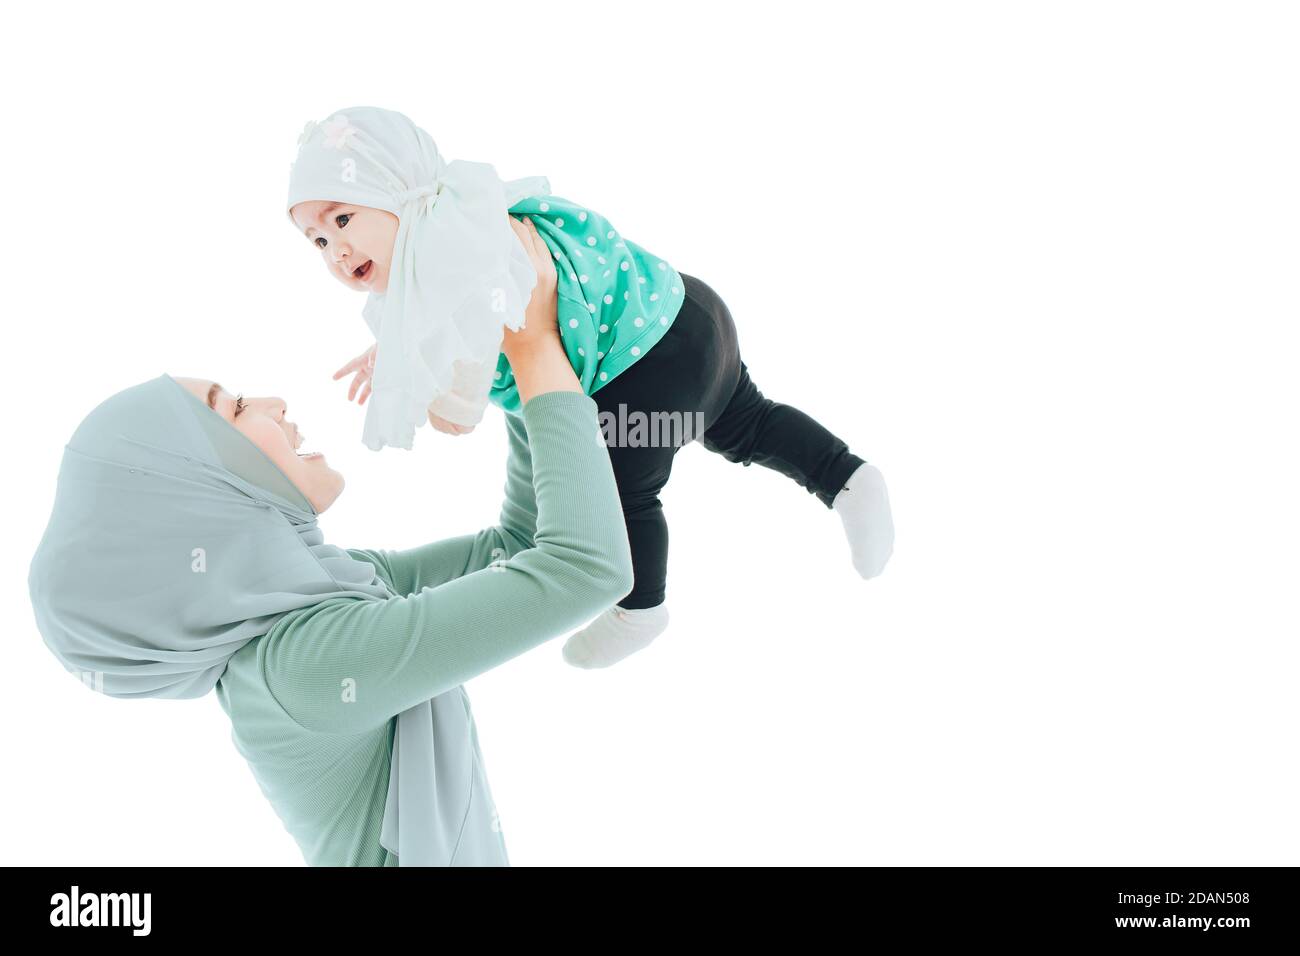 Famiglia musulmana o madre islam aumento gioco con bambino isolato su sfondo bianco. Foto Stock